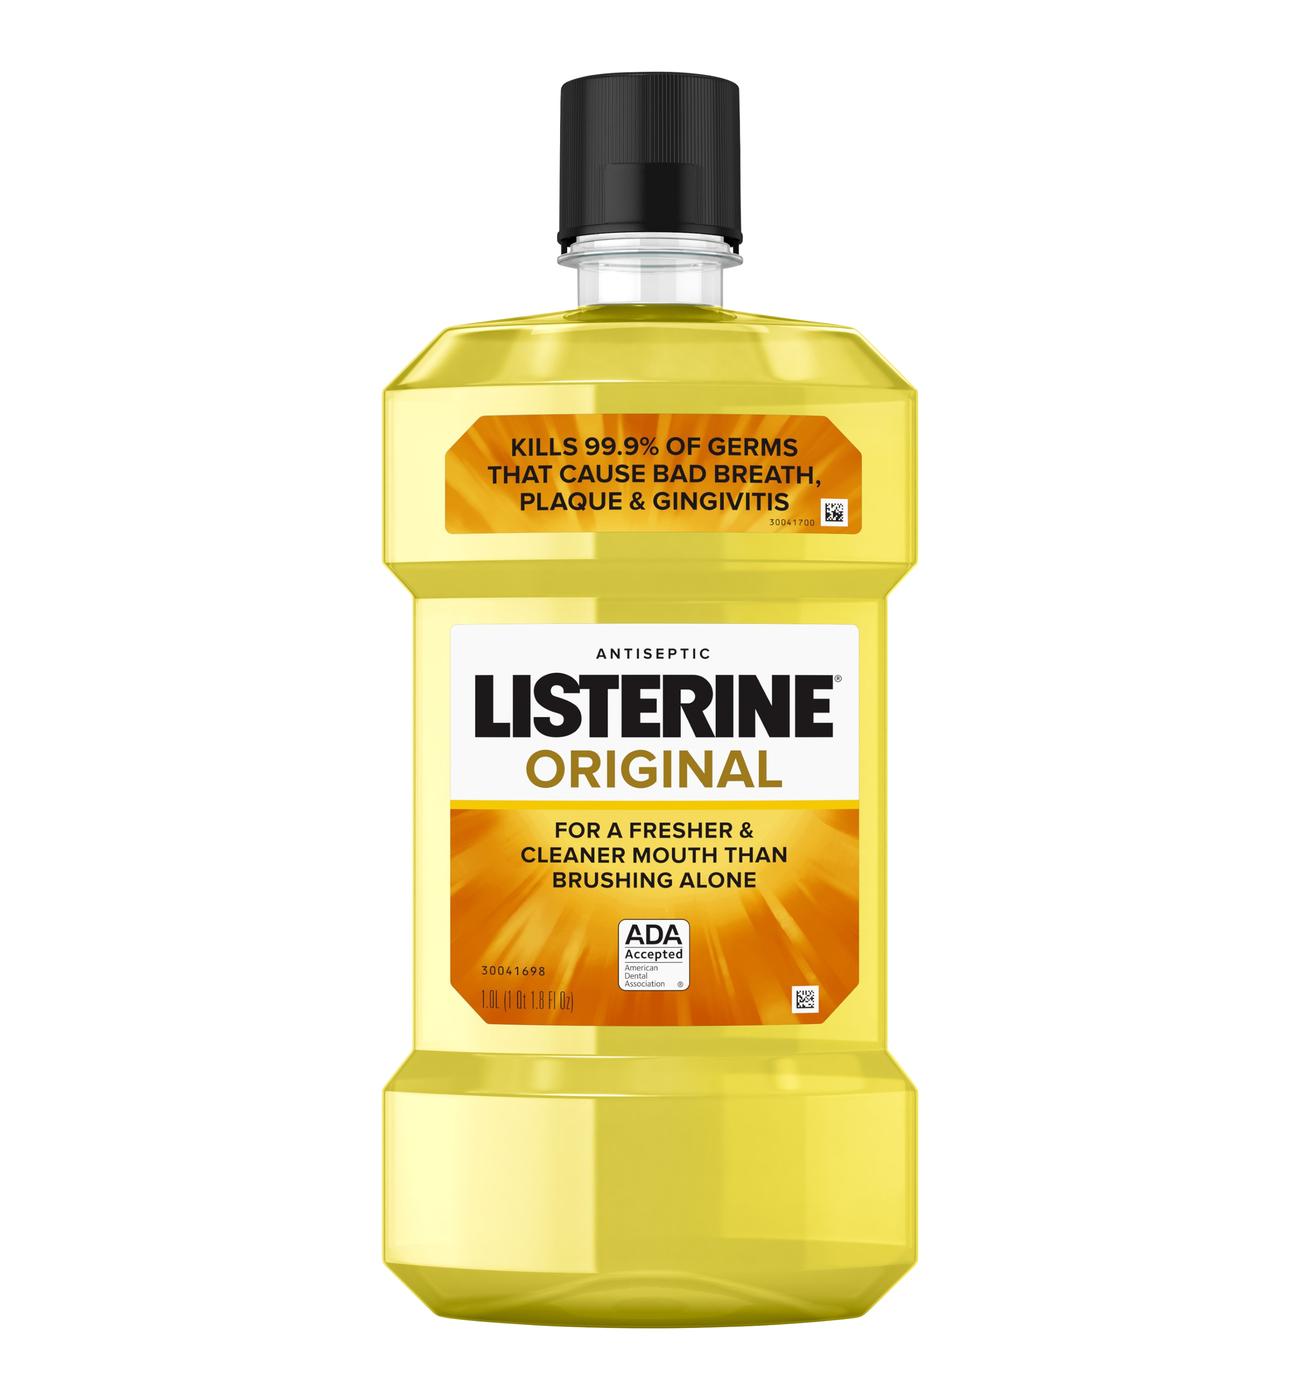 Listerine Original Antiseptic Mouthwash; image 1 of 6